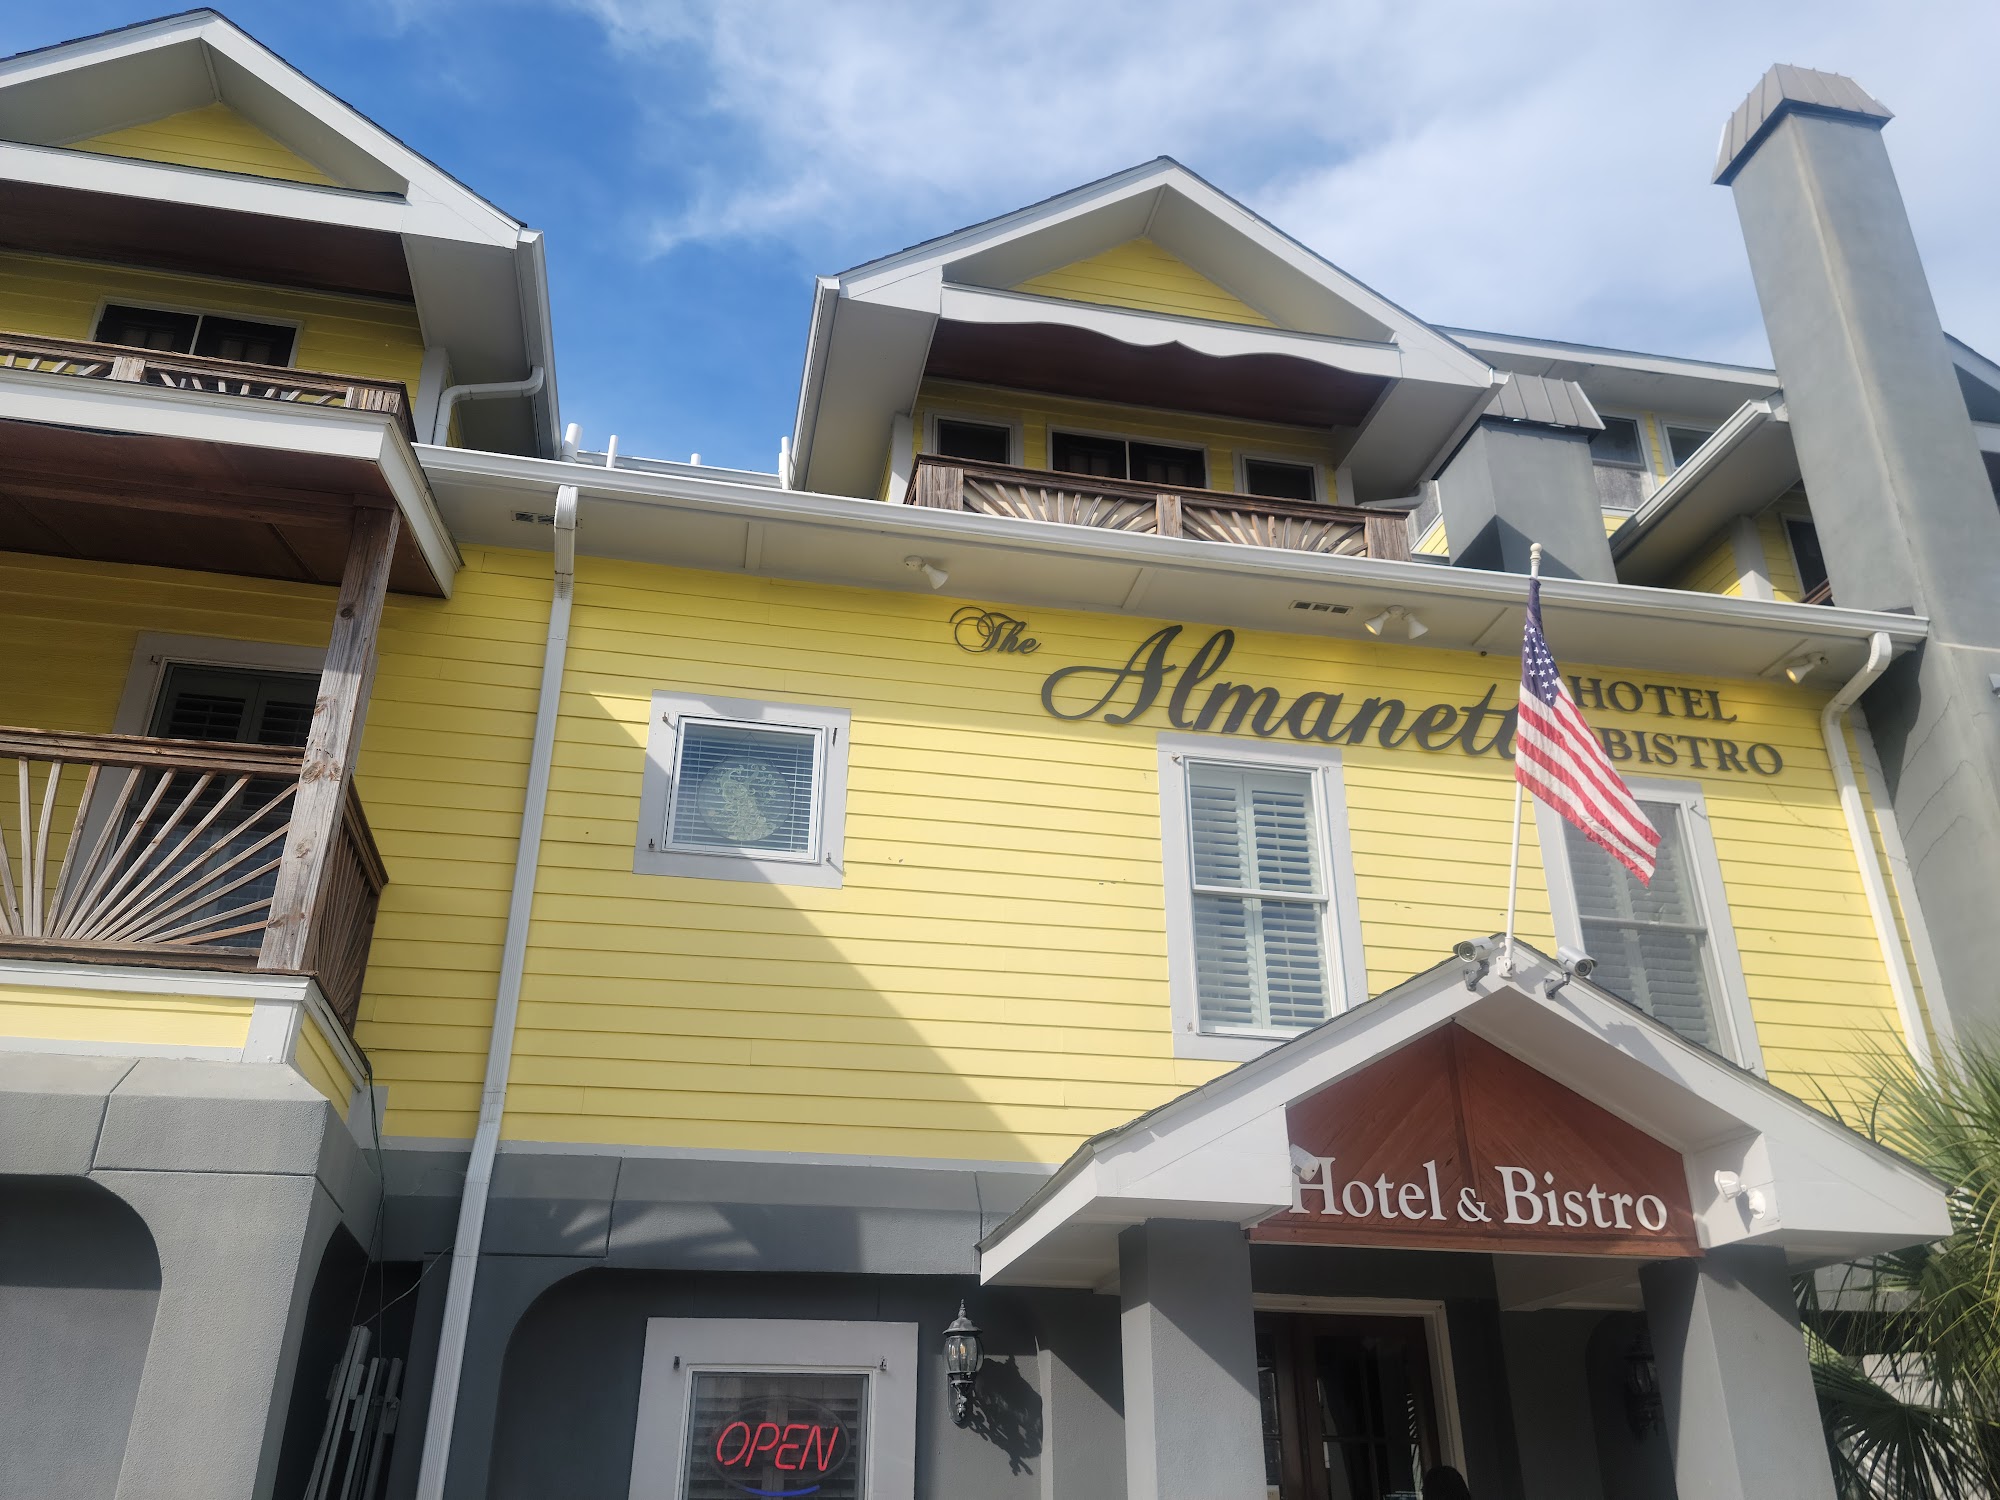 The Almanett Hotel & Bistro near The Aquarium